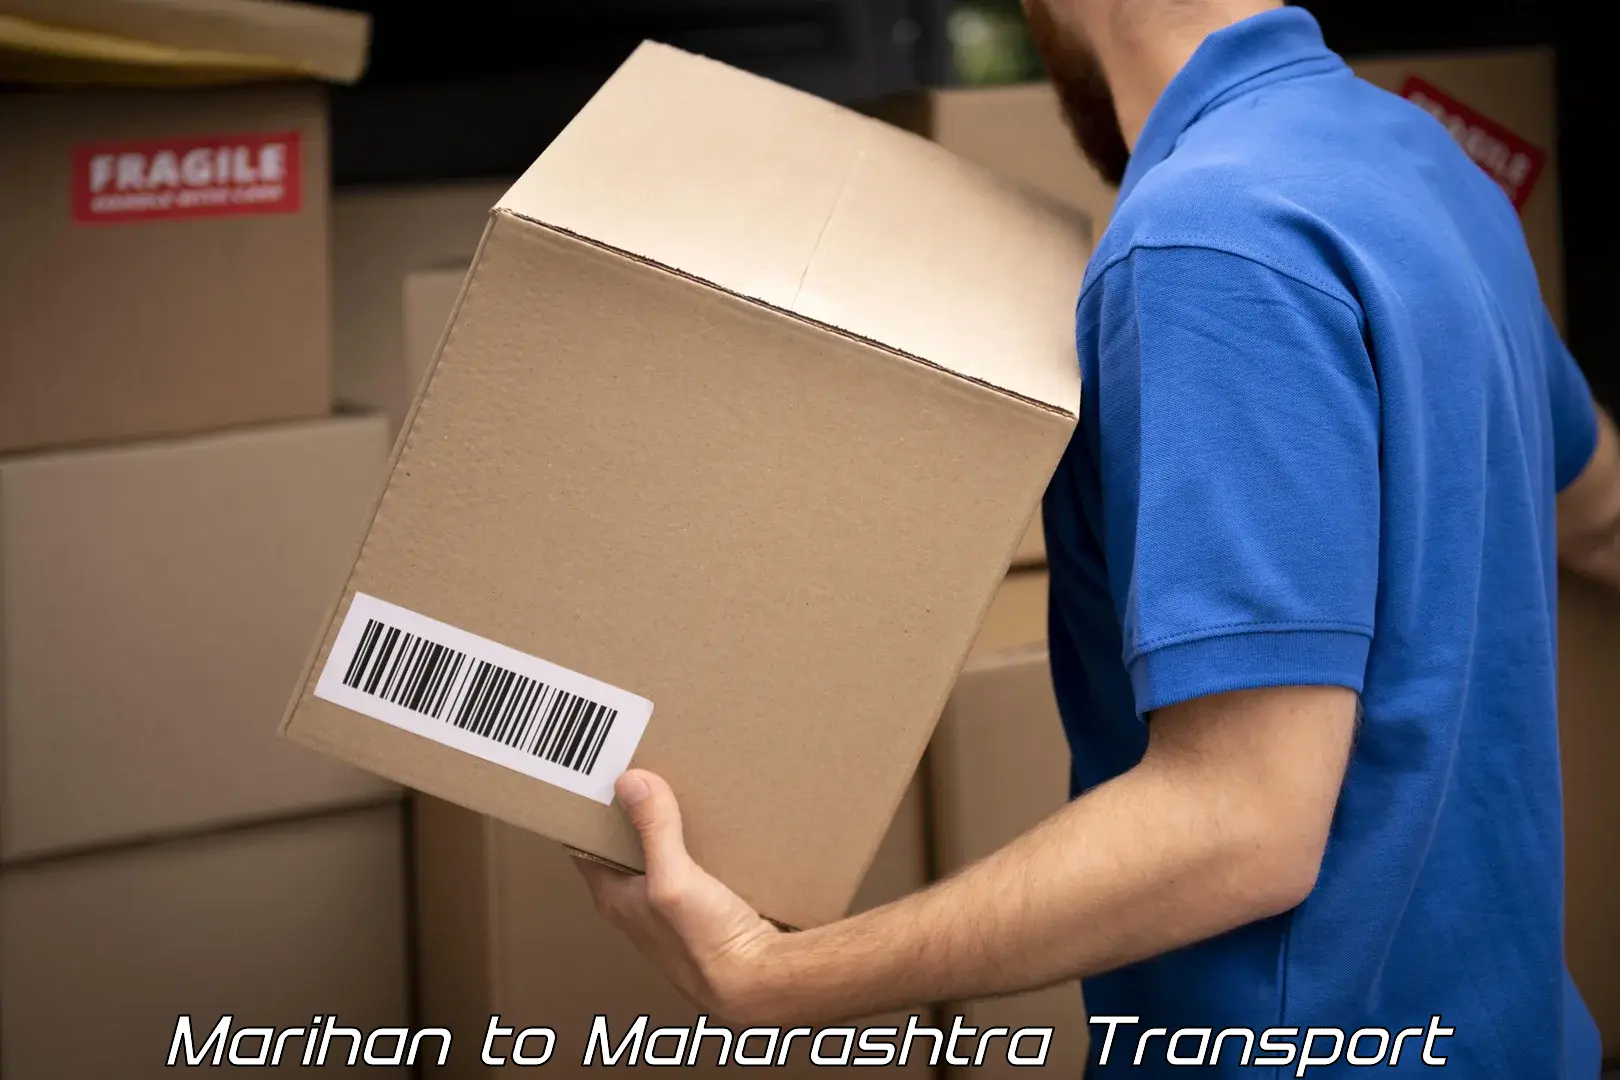 Vehicle parcel service Marihan to Vasai